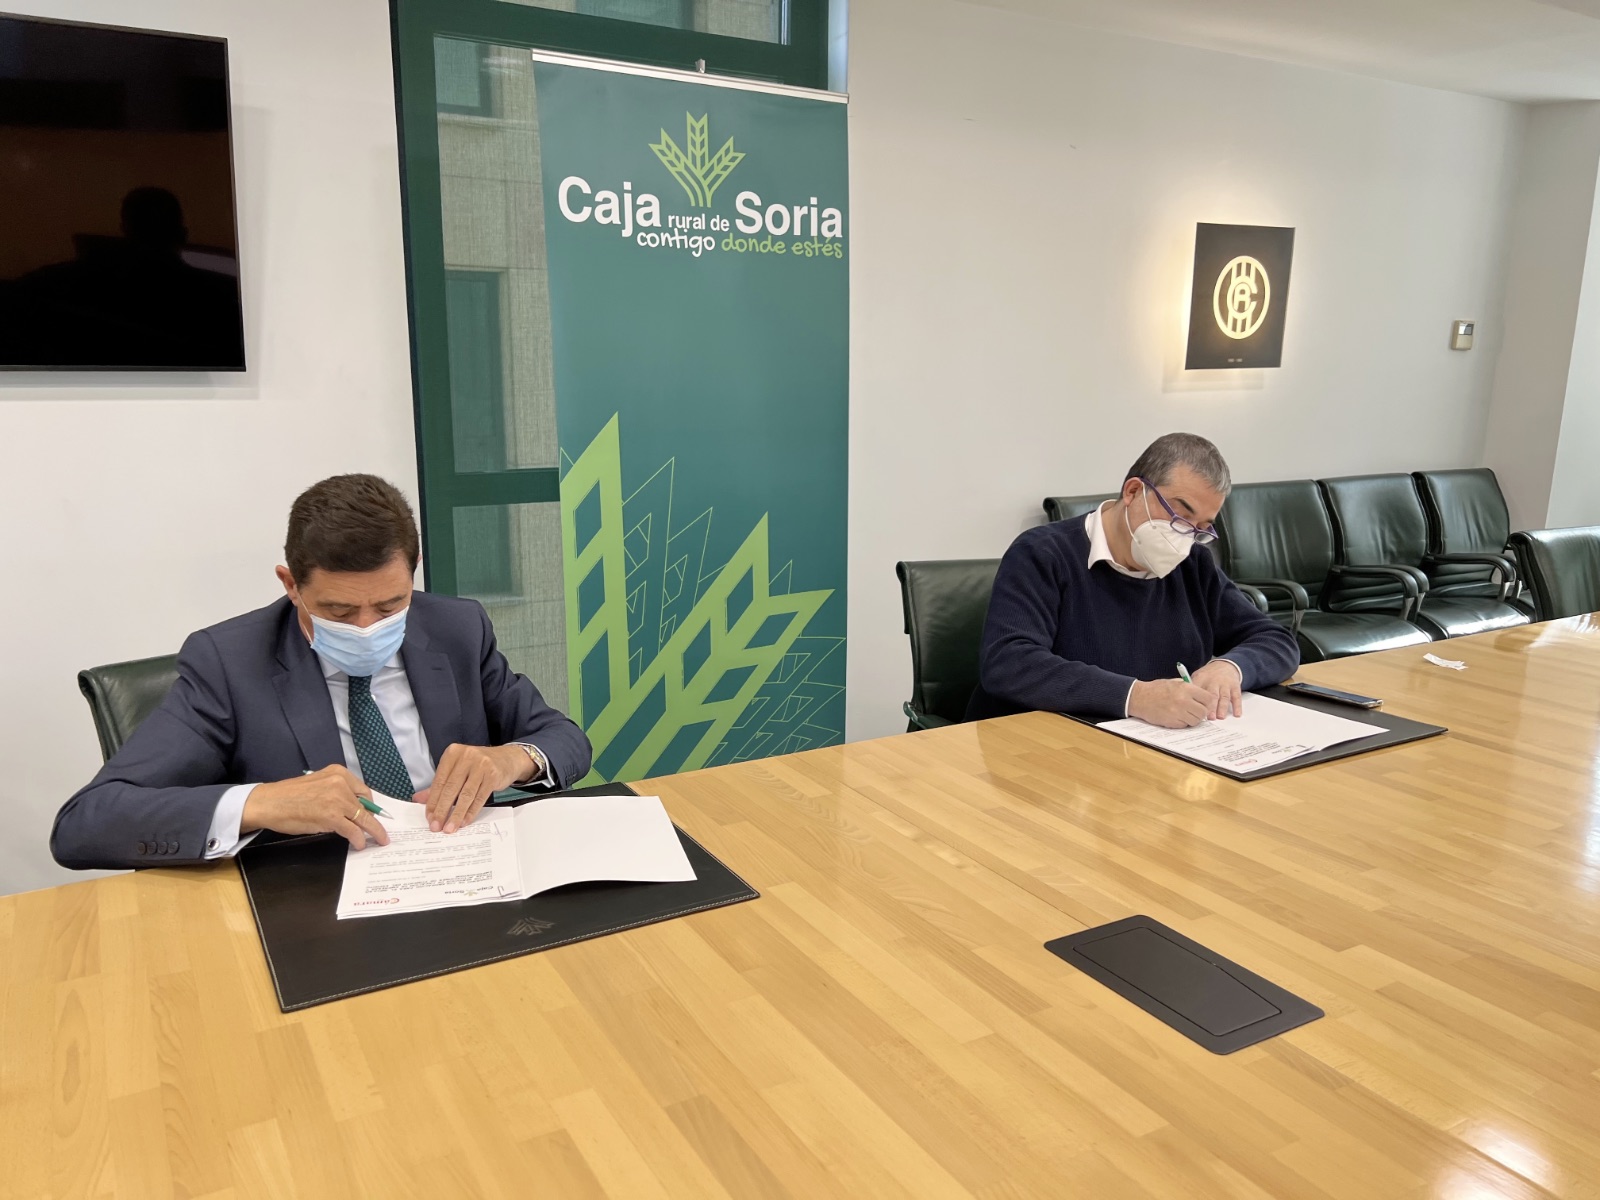 Caja Rural de Soria y la Cámara de Comercio firman dos convenios para impulsar y apoyar al tejido empresarial de la provincia